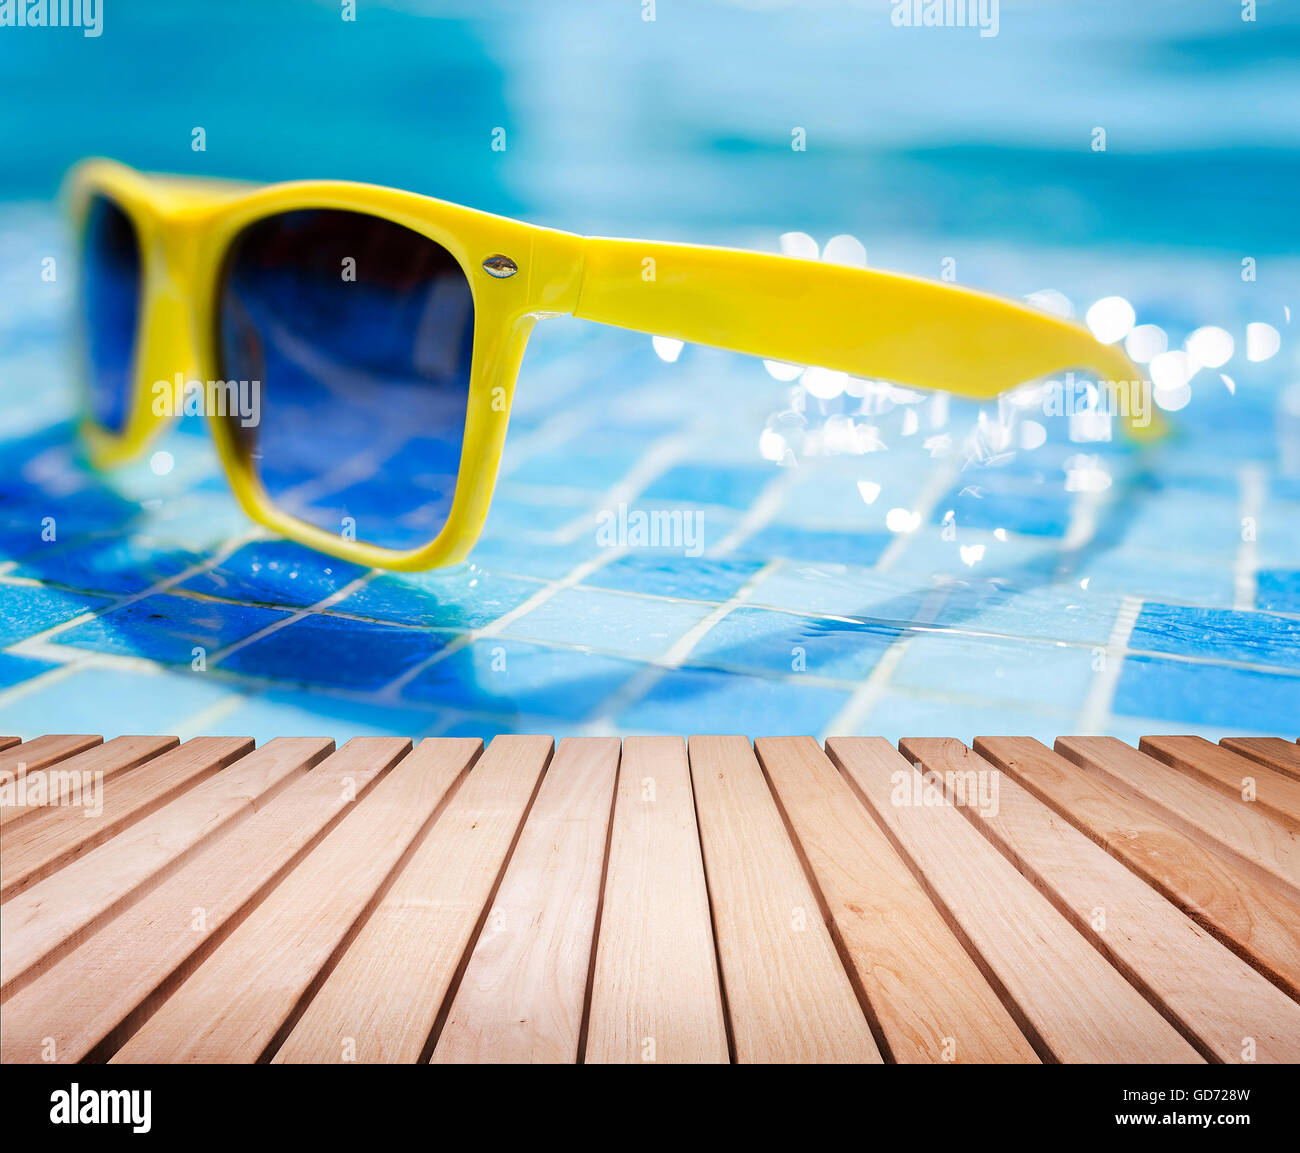 Piattaforma di legno o tavole e sunglass. Concetto di vacanza. Foto Stock